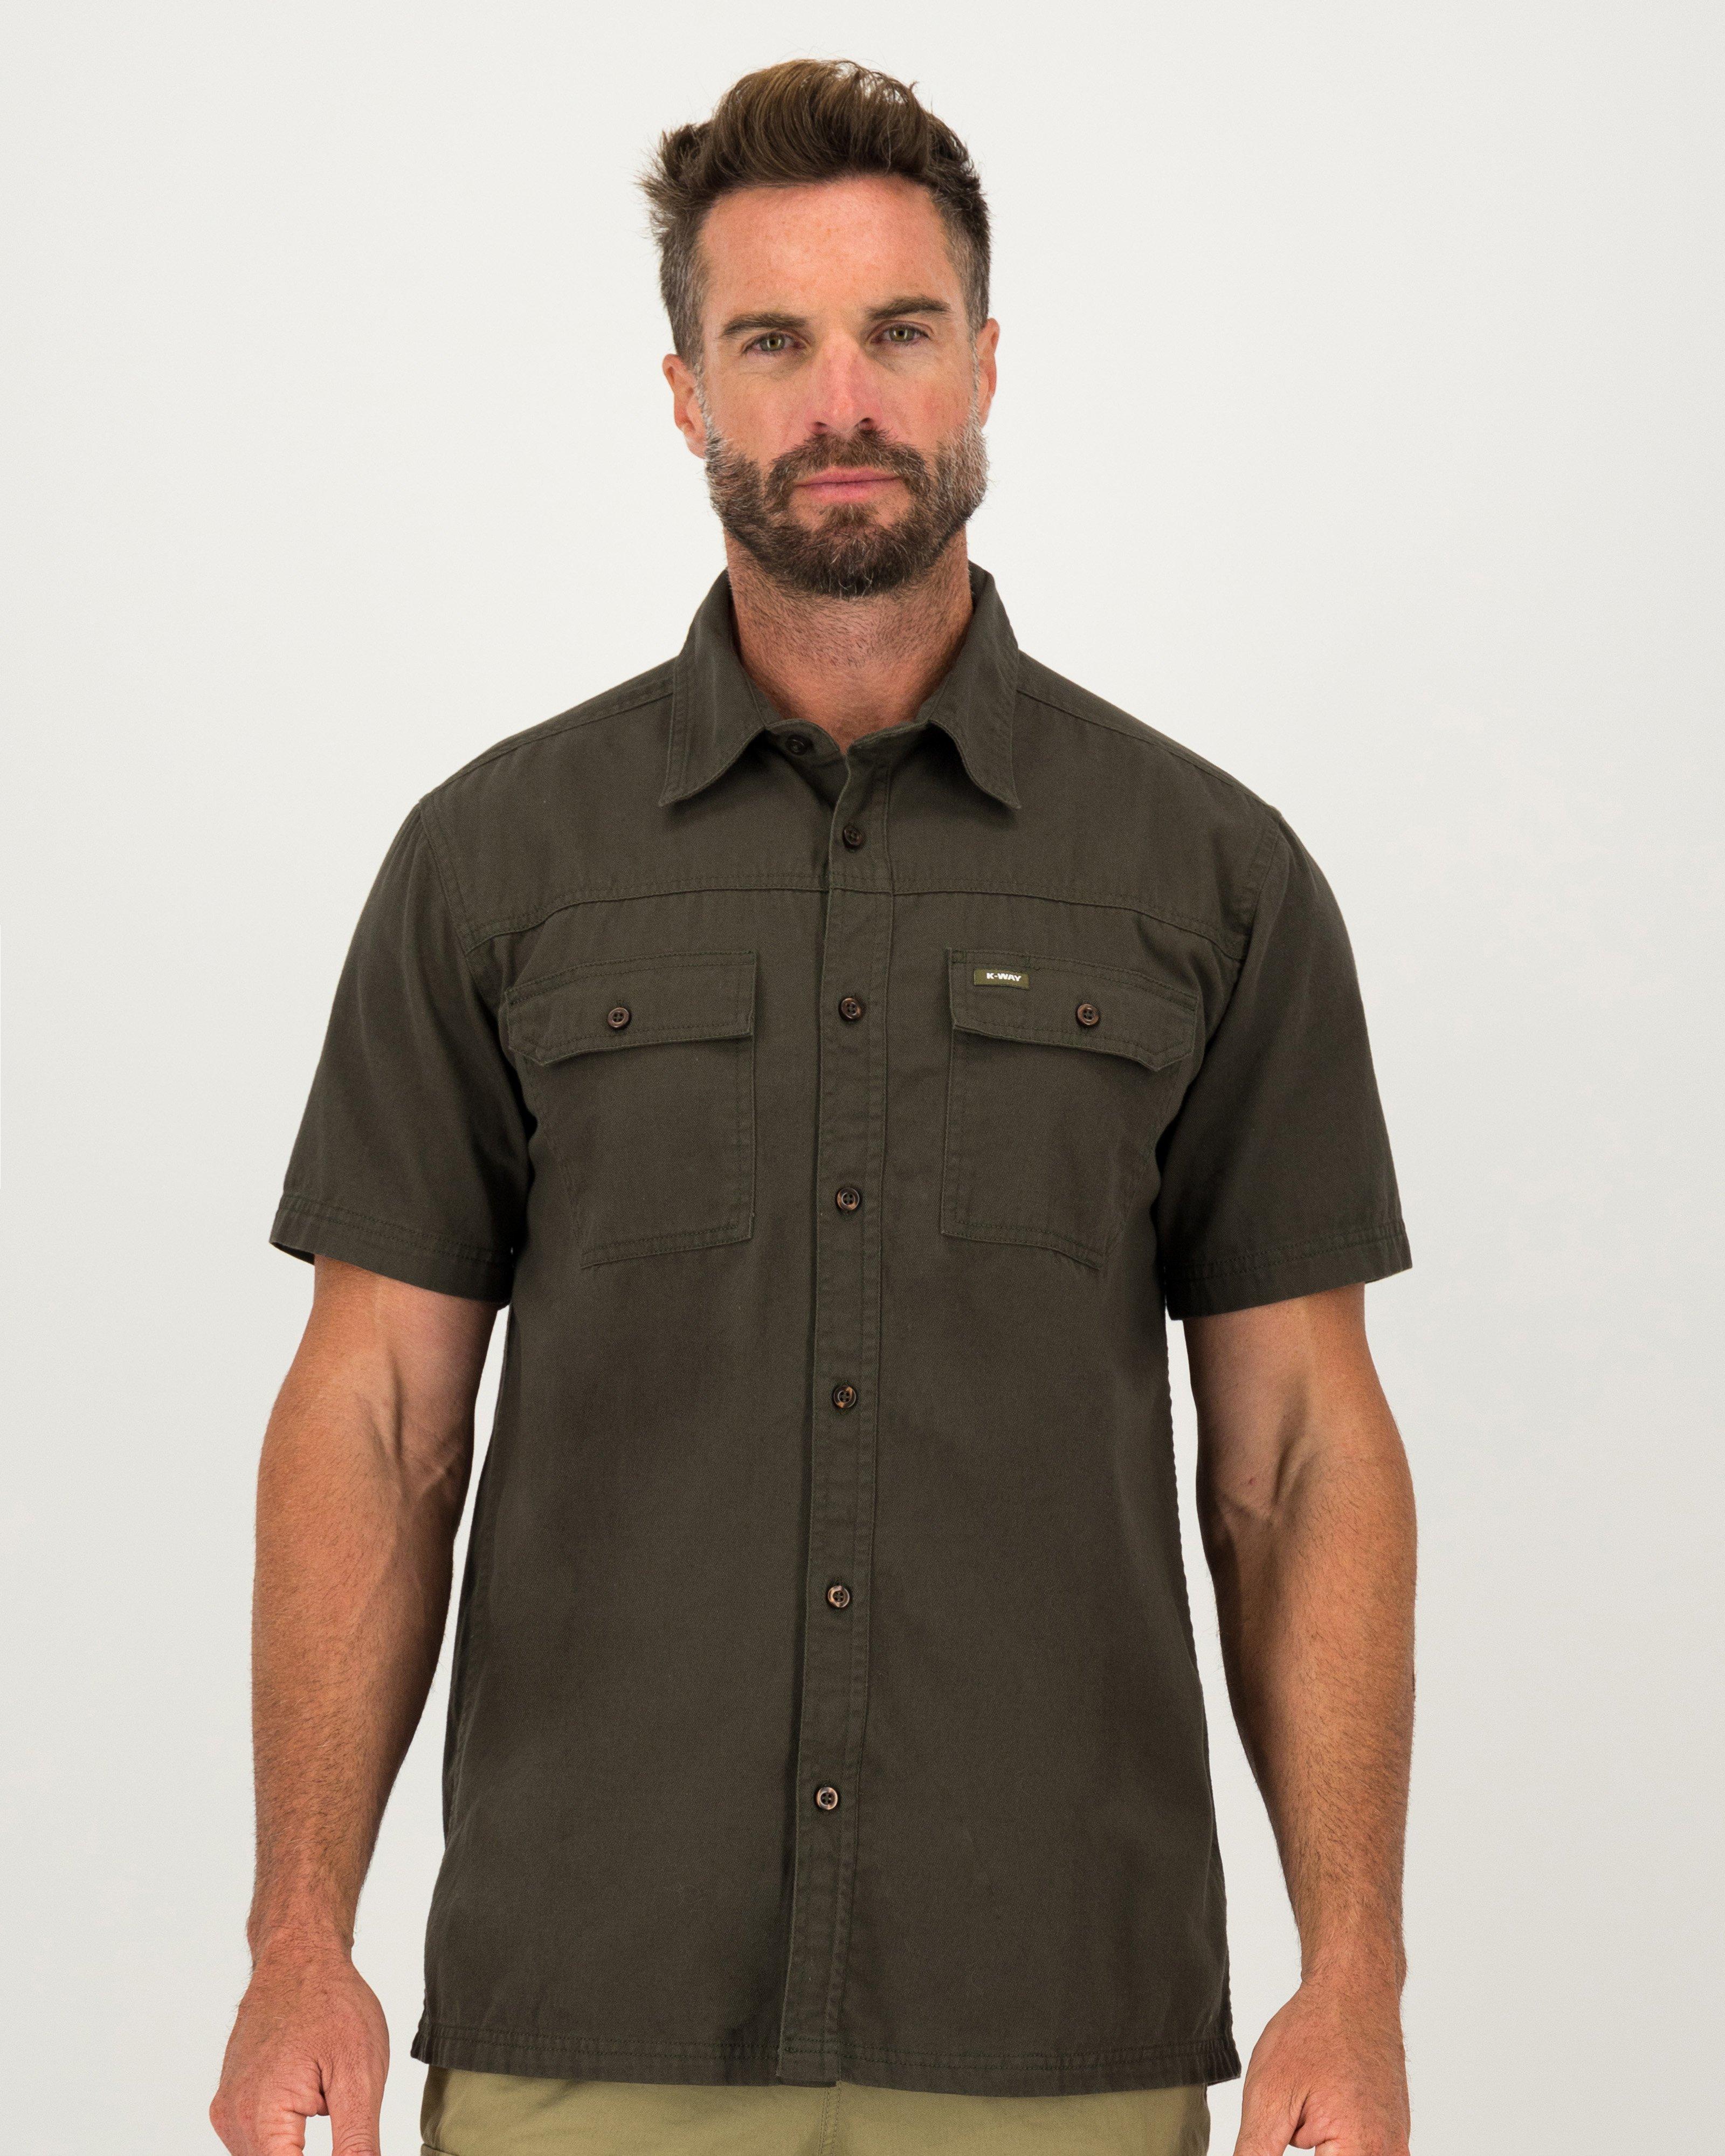 Boyt Short Sleeve Safari Shirt 4XL / Khaki / Right Hand